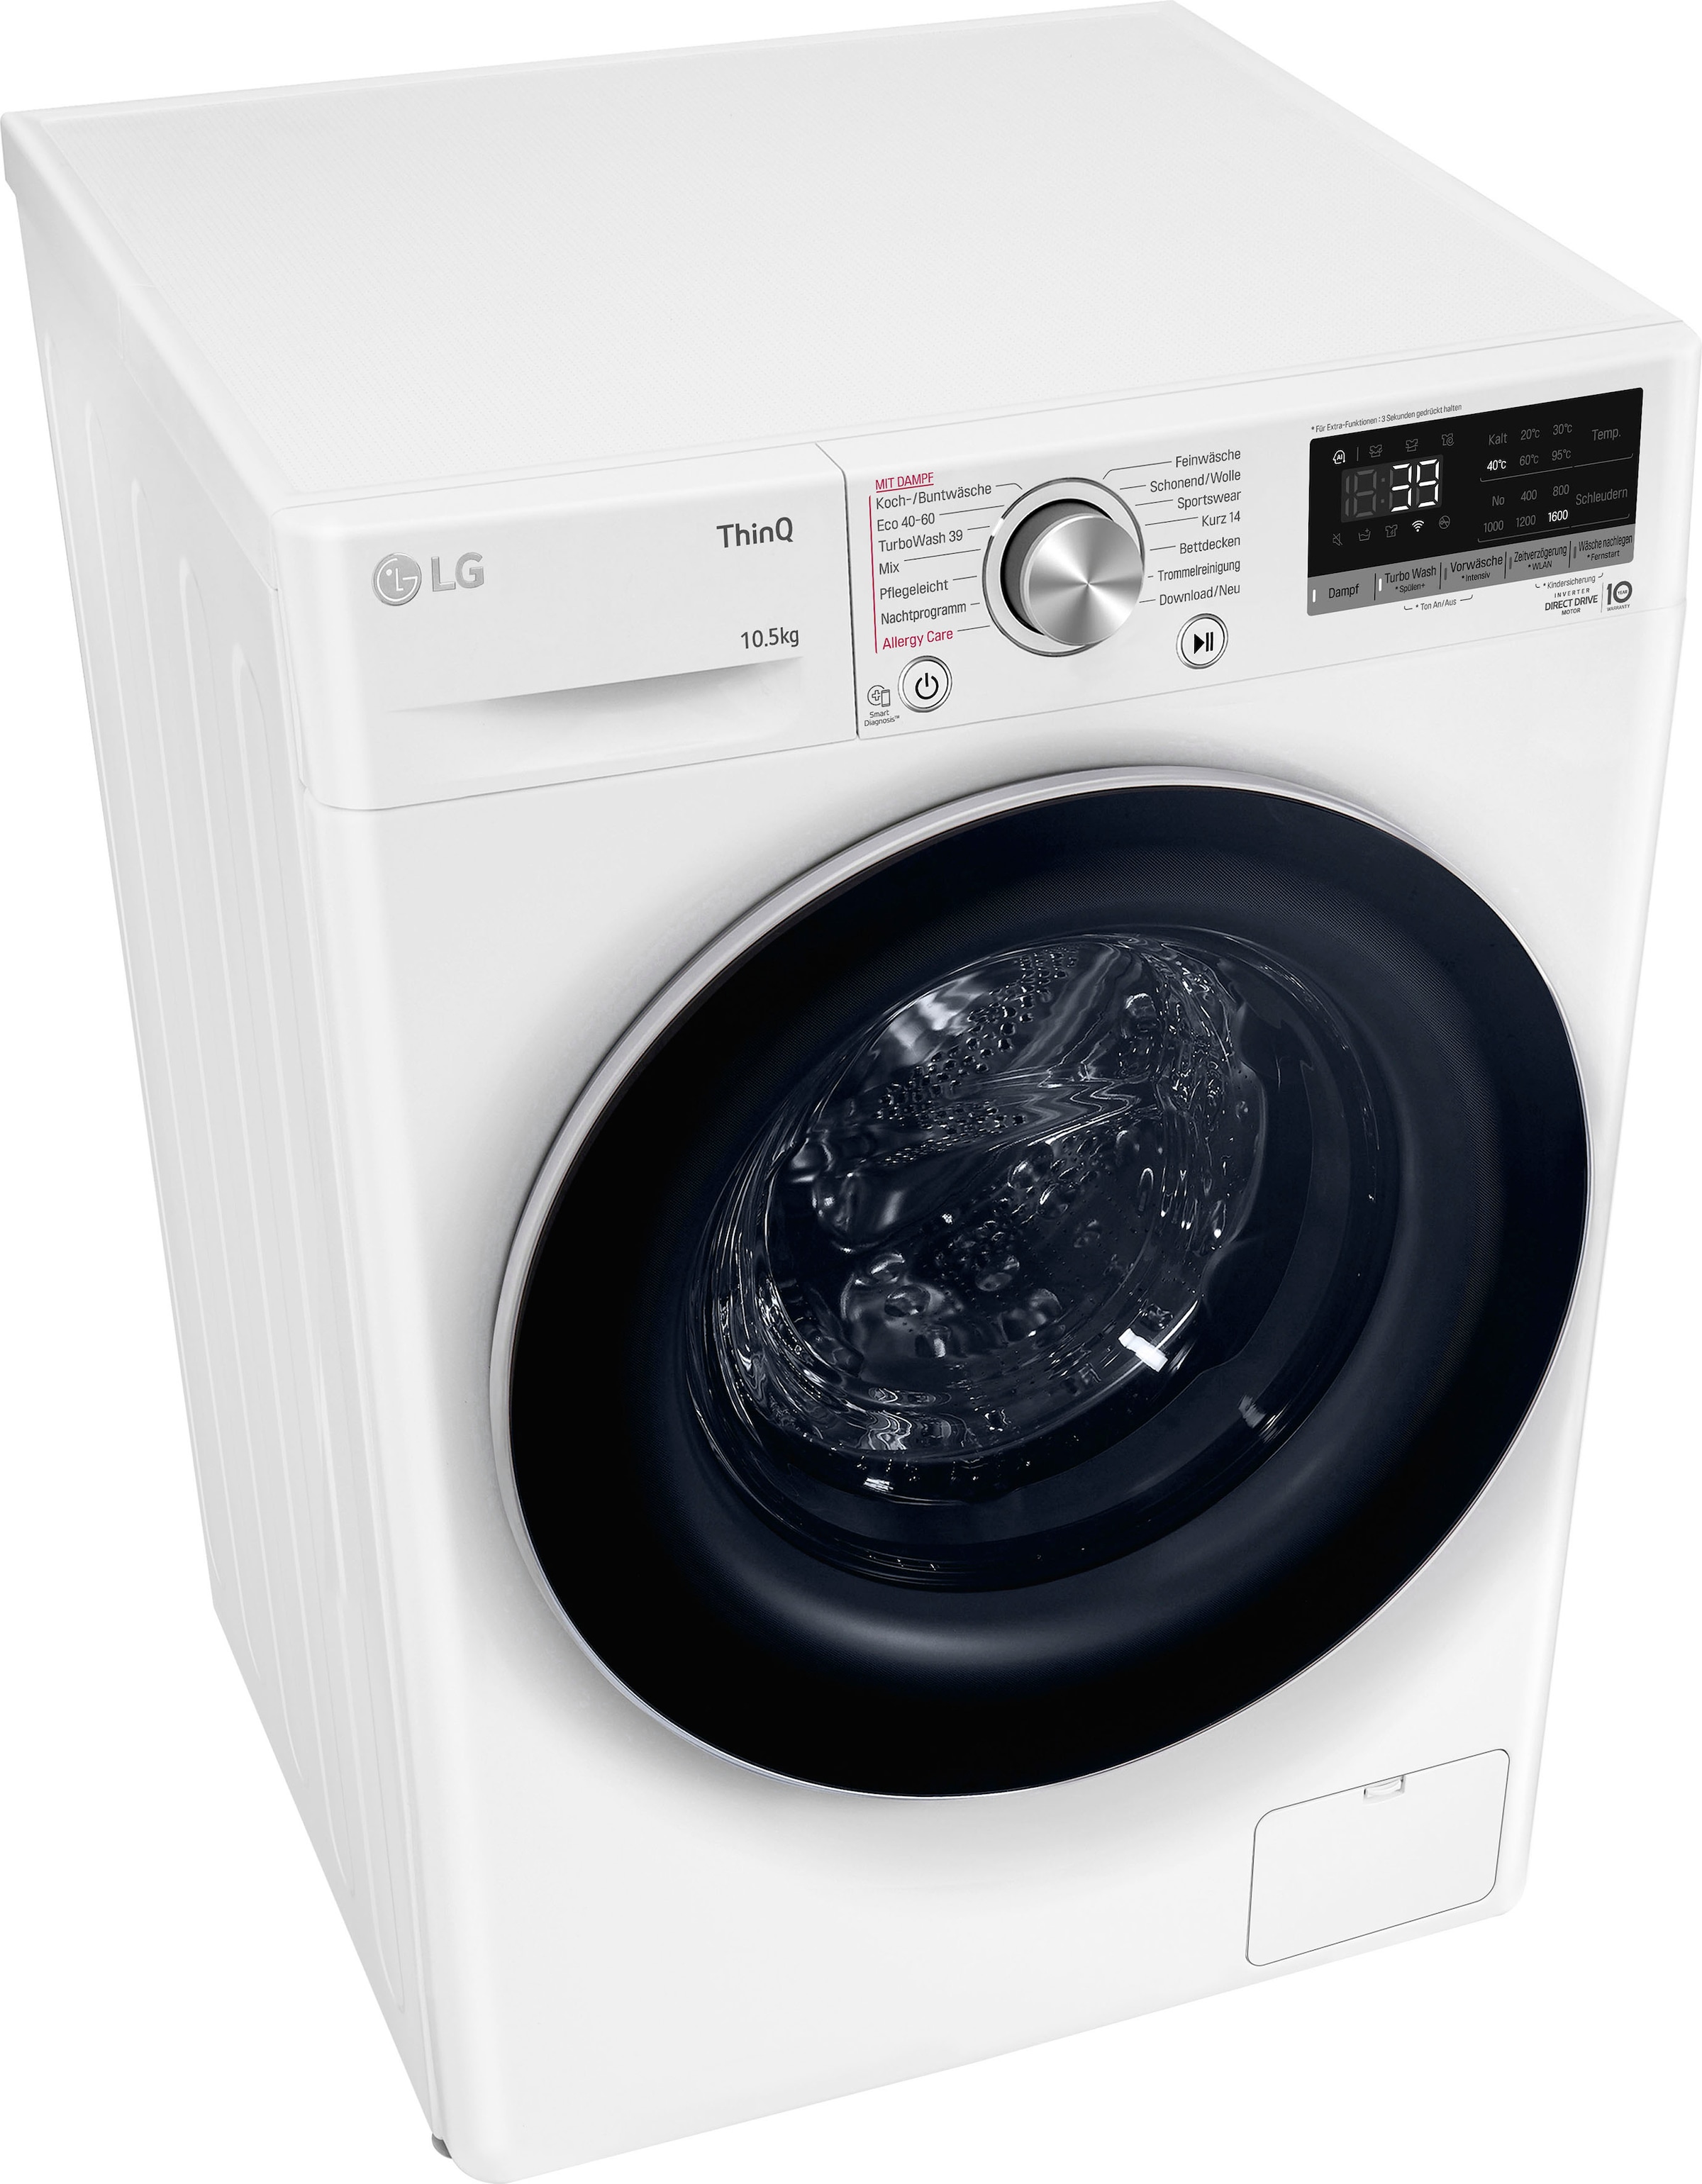 LG Waschmaschine mit nur - TurboWash® »F6WV710P1«, Jahren 39 3 F6WV710P1, U/min, kg, 10,5 XXL in Waschen 1600 Garantie Minuten